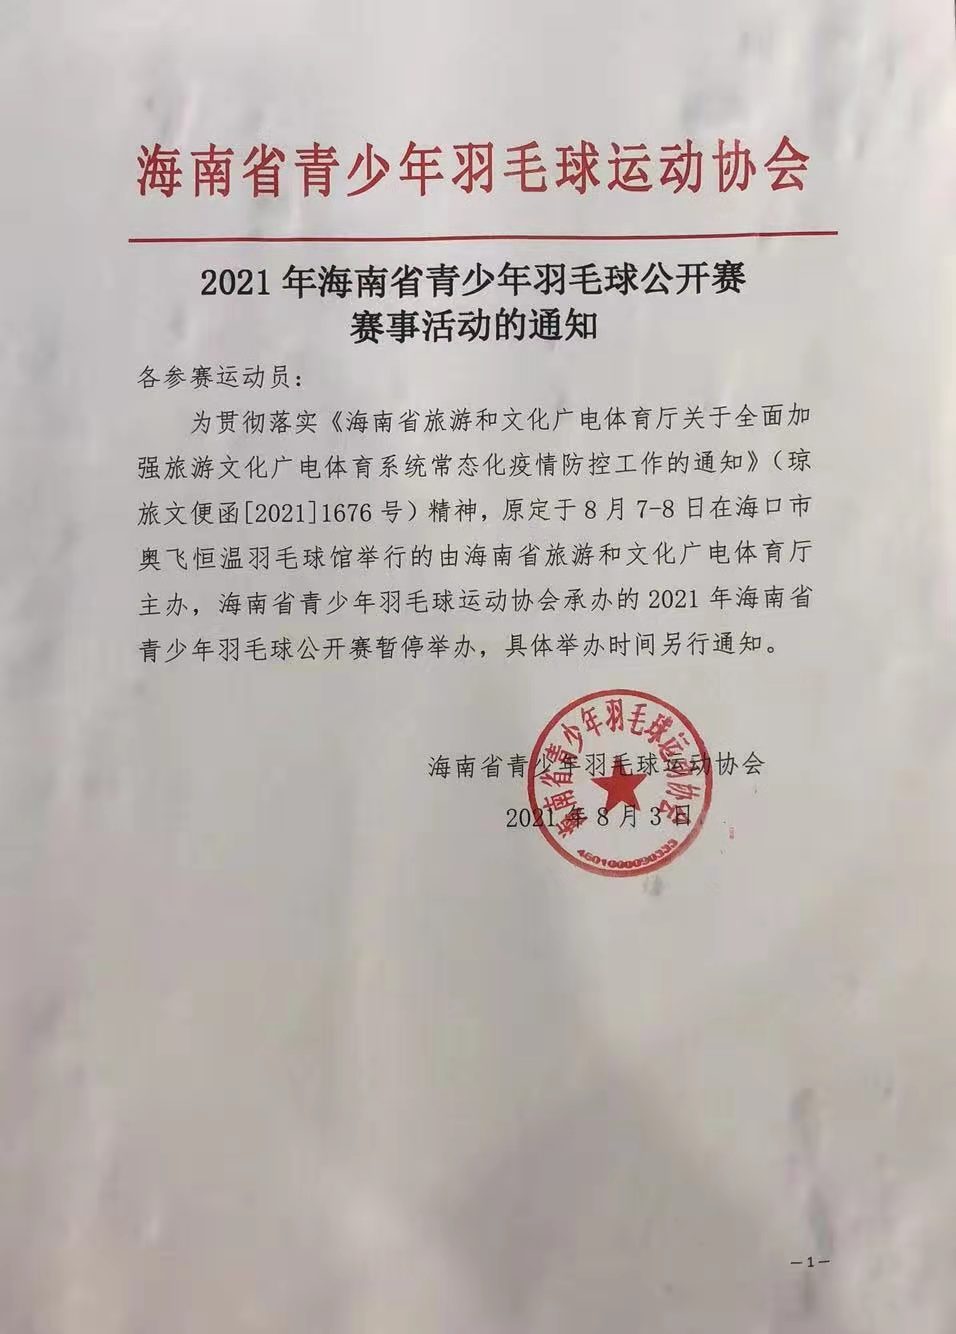 2021年海南省青少年羽毛球公开赛暂停举办